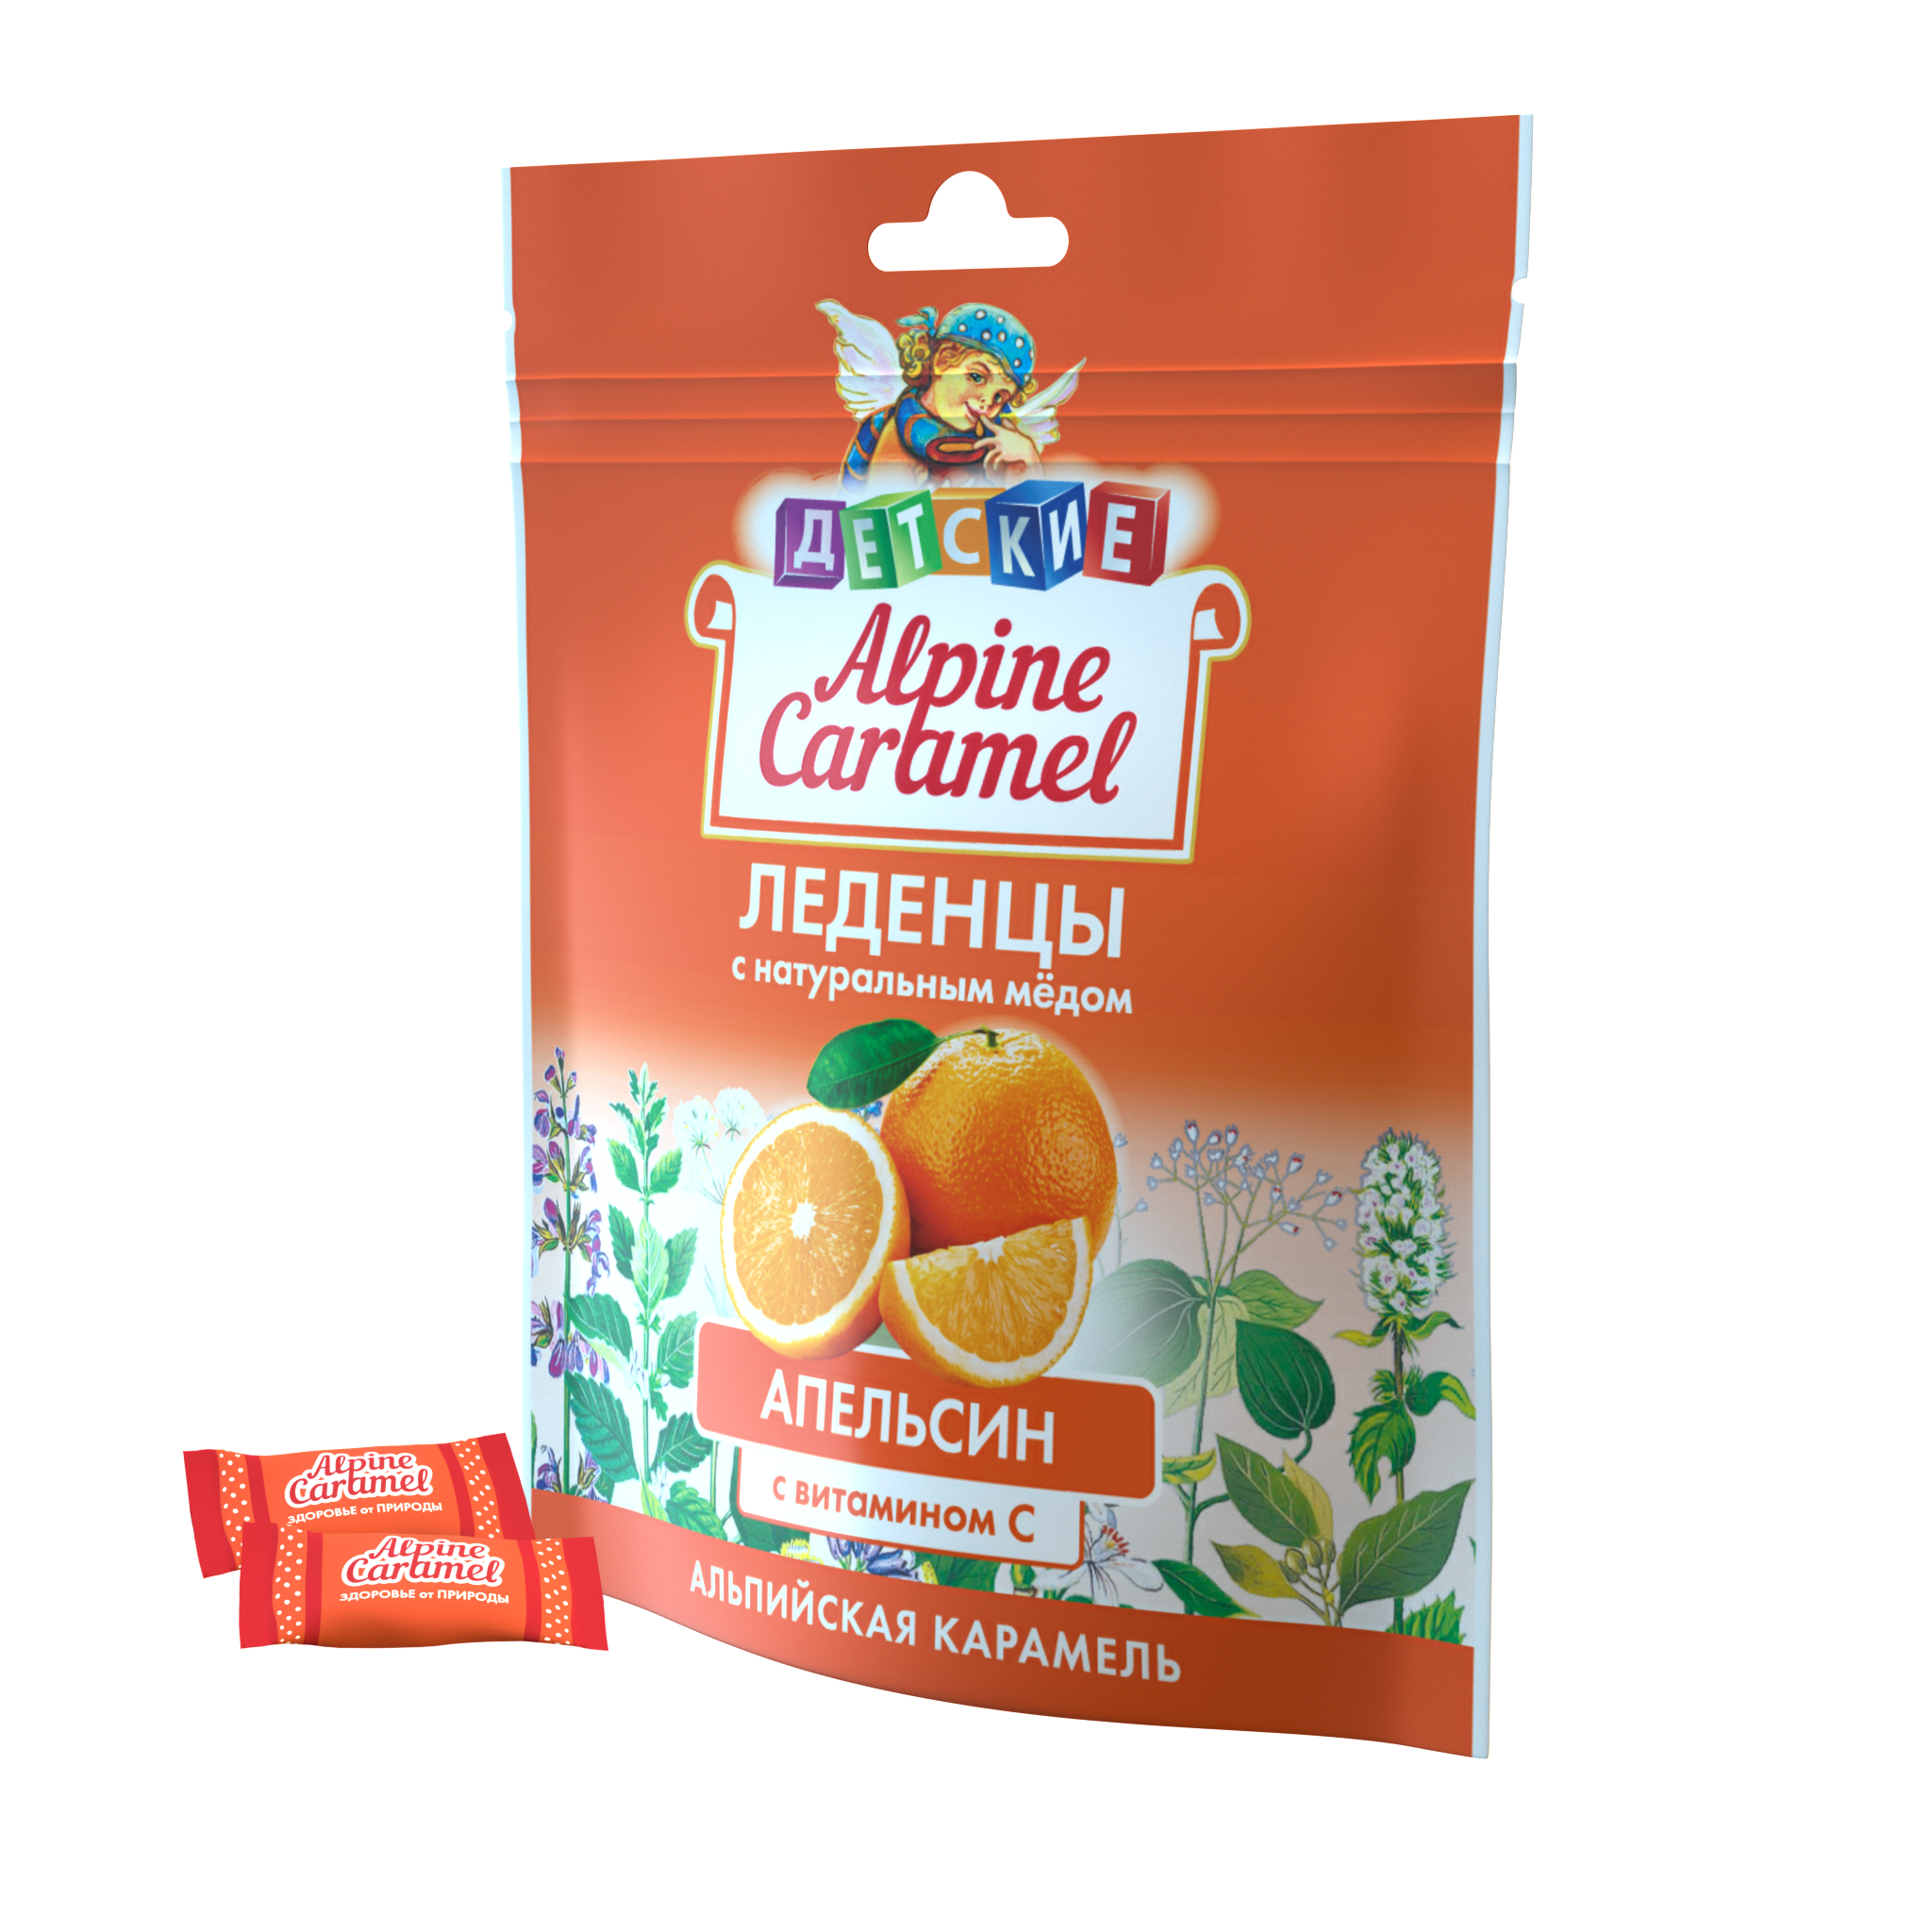 Alpine Caramel Альпийская Карамель леденцы дет (апельсин с медом и витамином С), 75 г альпийская карамель леденцы 75г